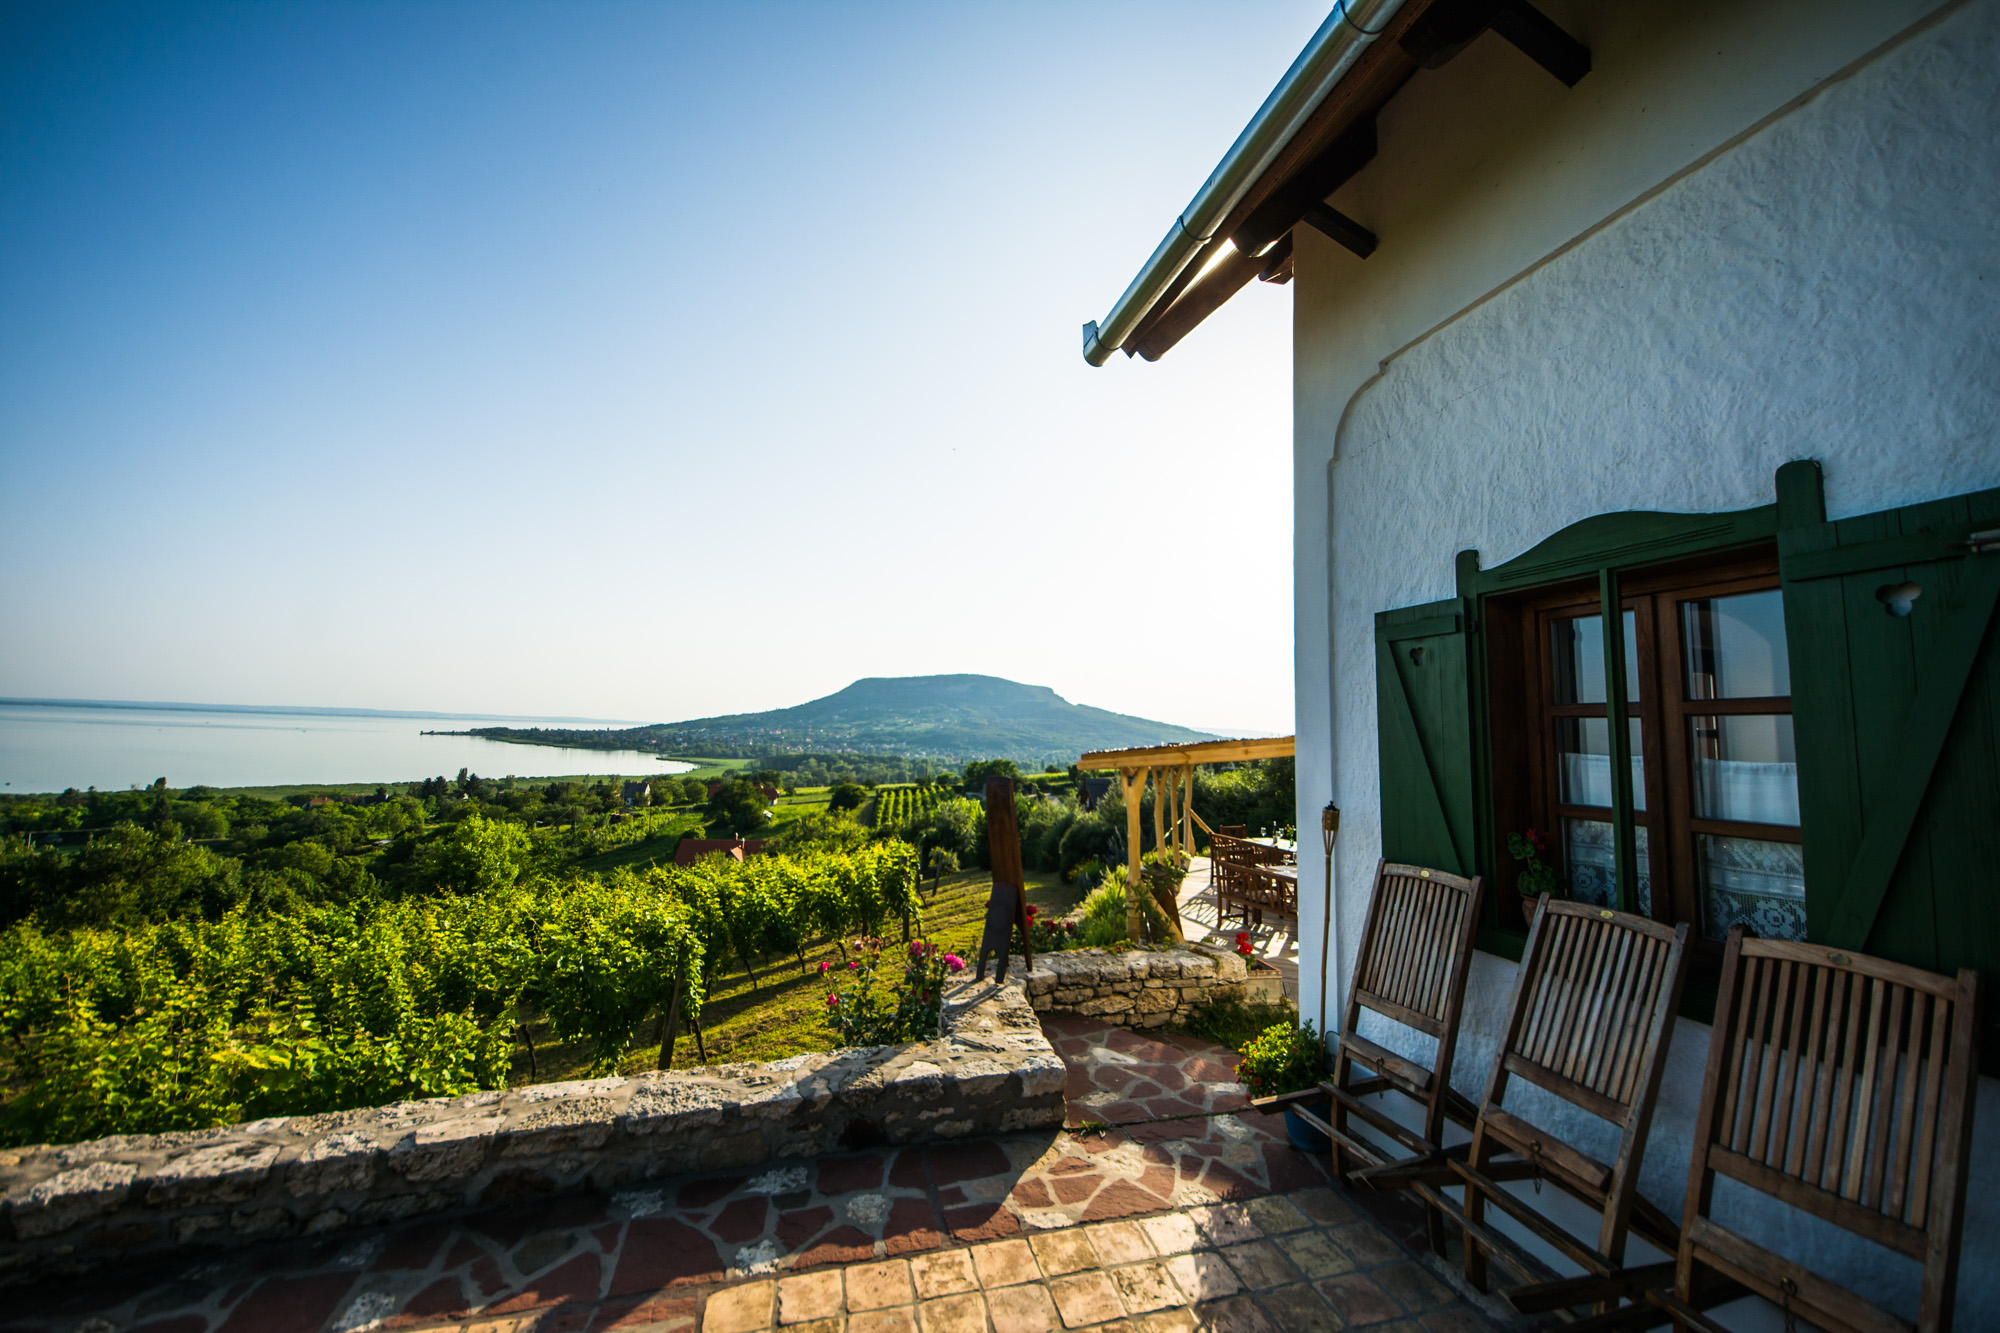 7 ház, 7 bor – Balatoni borászatok pazar szállásait ajánljuk a zimankóra